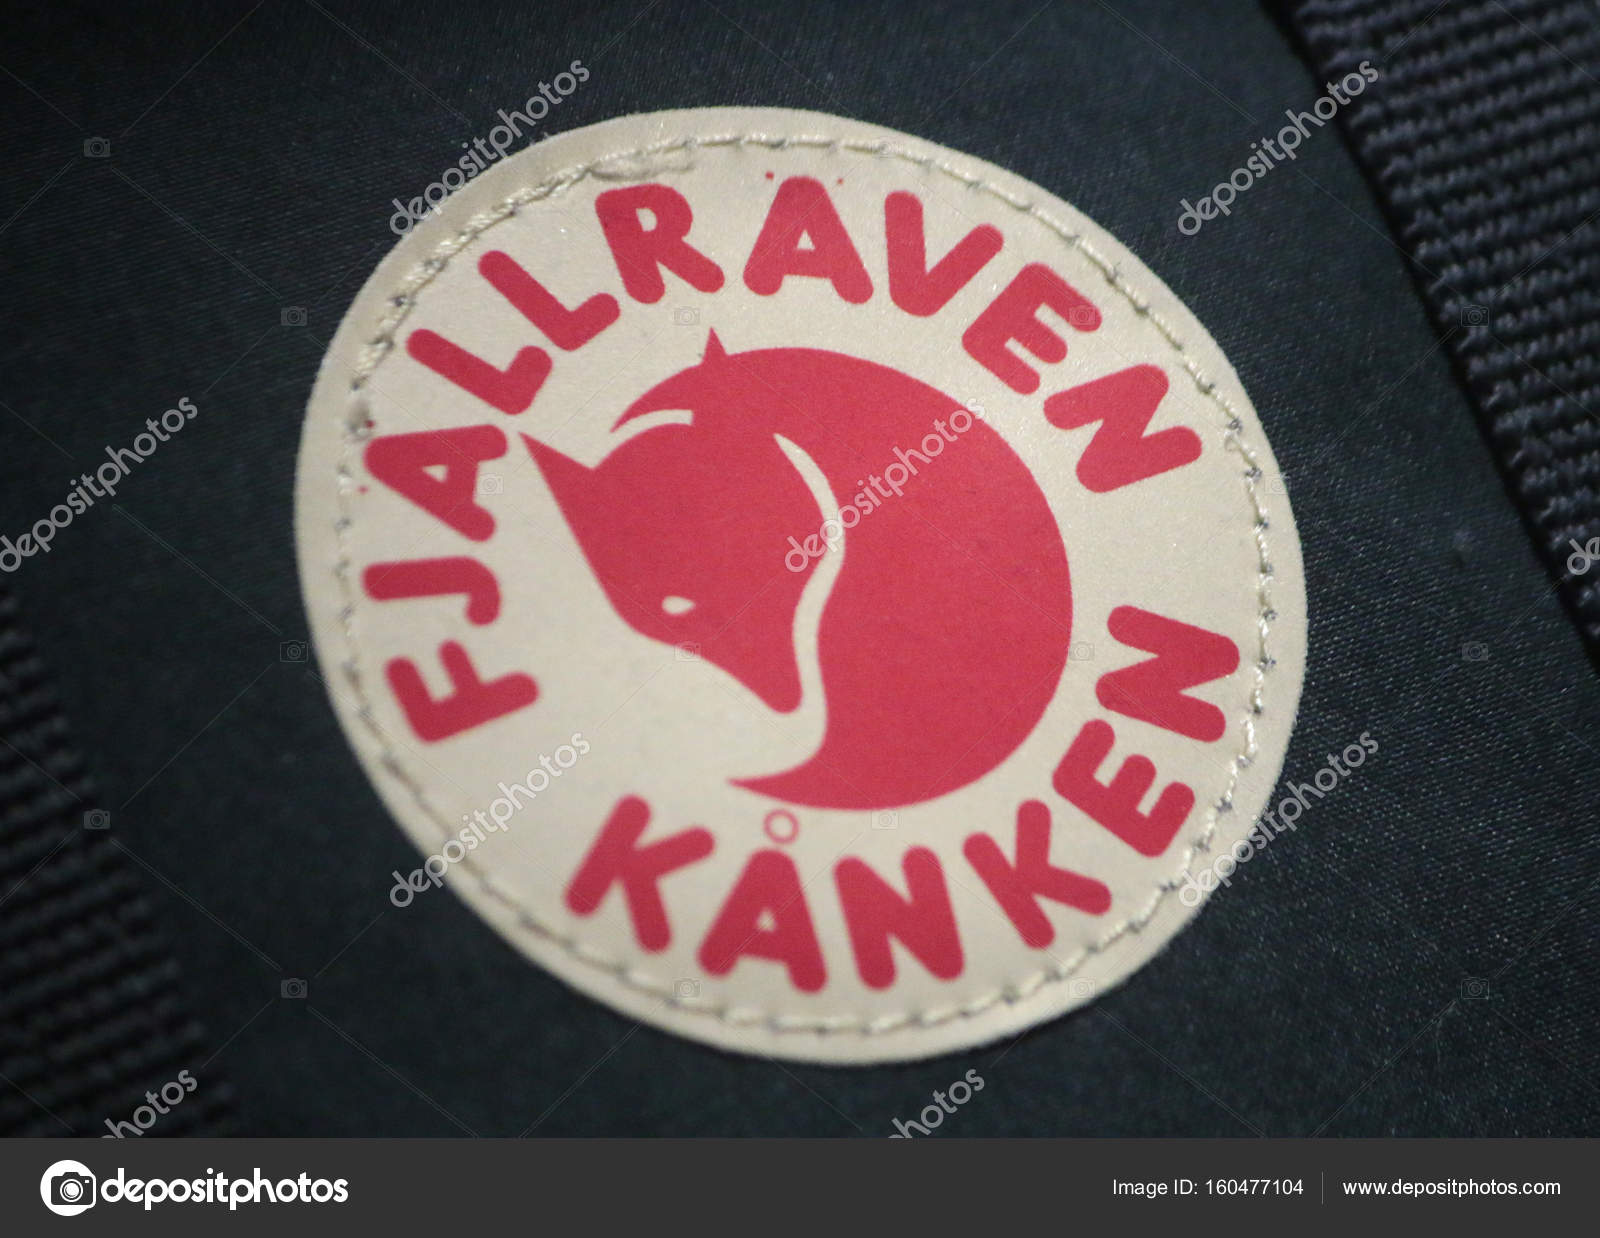 ondersteuning intelligentie terug Logo of brand "Fjallraven Kanken" – Stock Editorial Photo © 360ber  #160477104